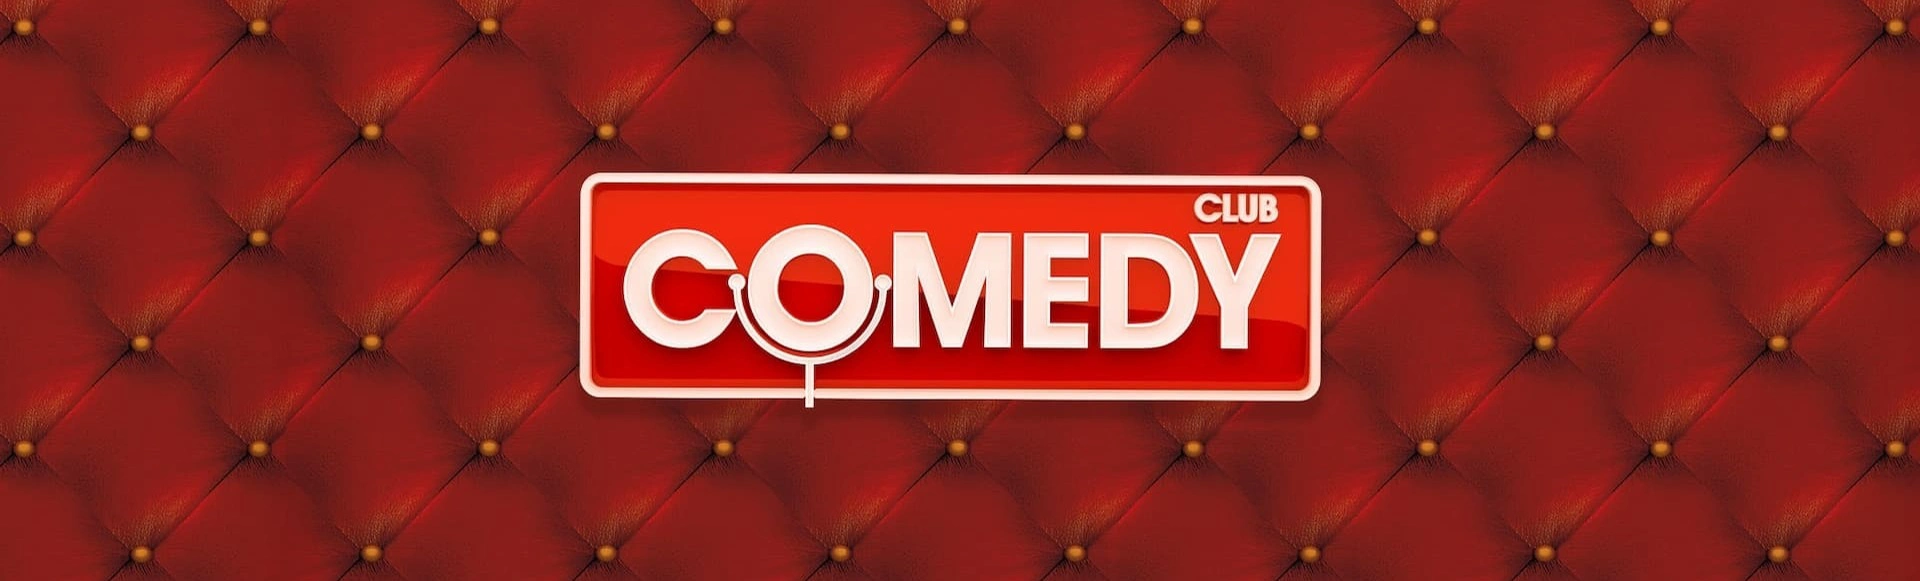 Вечеринка Comedy Club – море смеха и веселья!